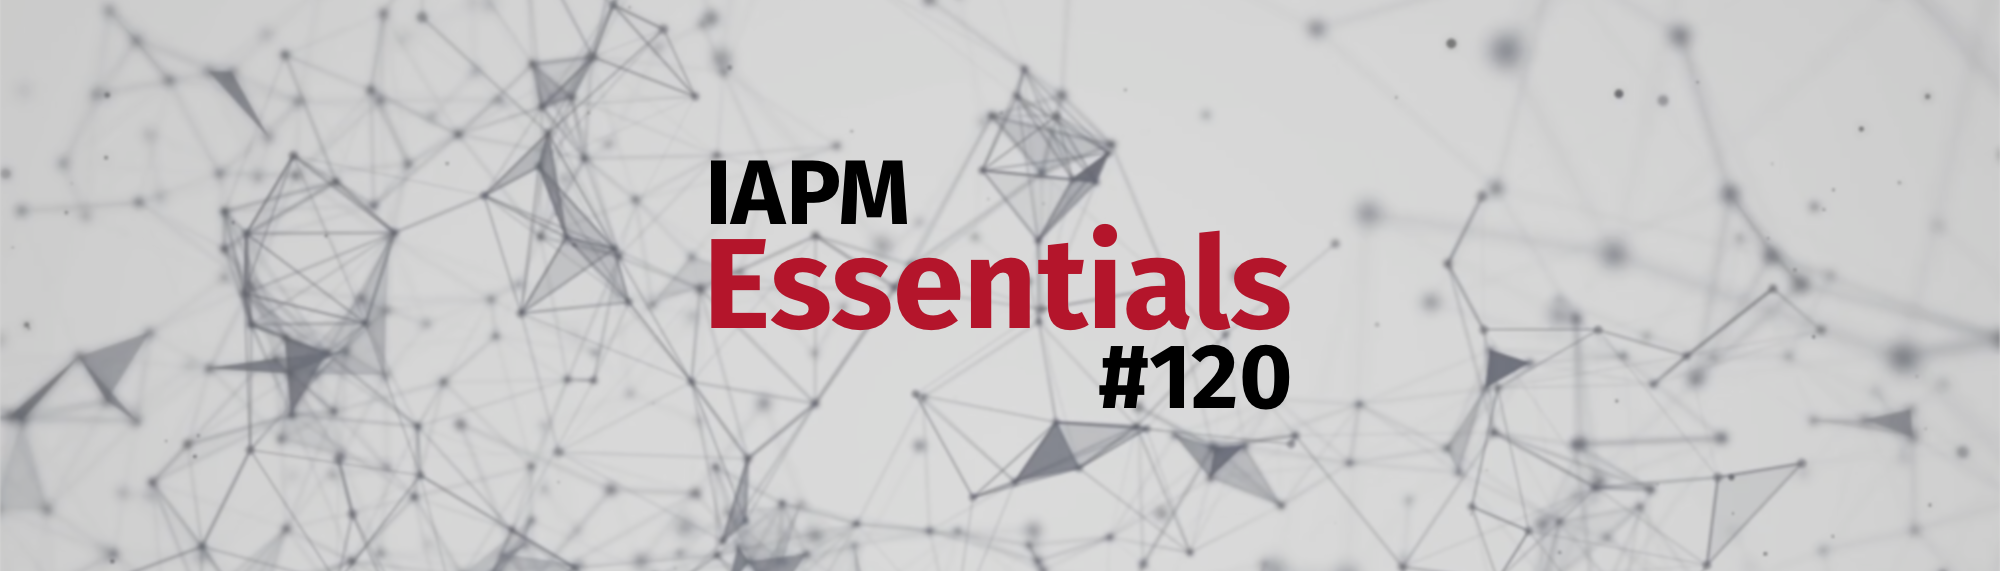 IAPM Essentials #120 - PM news | IAPM